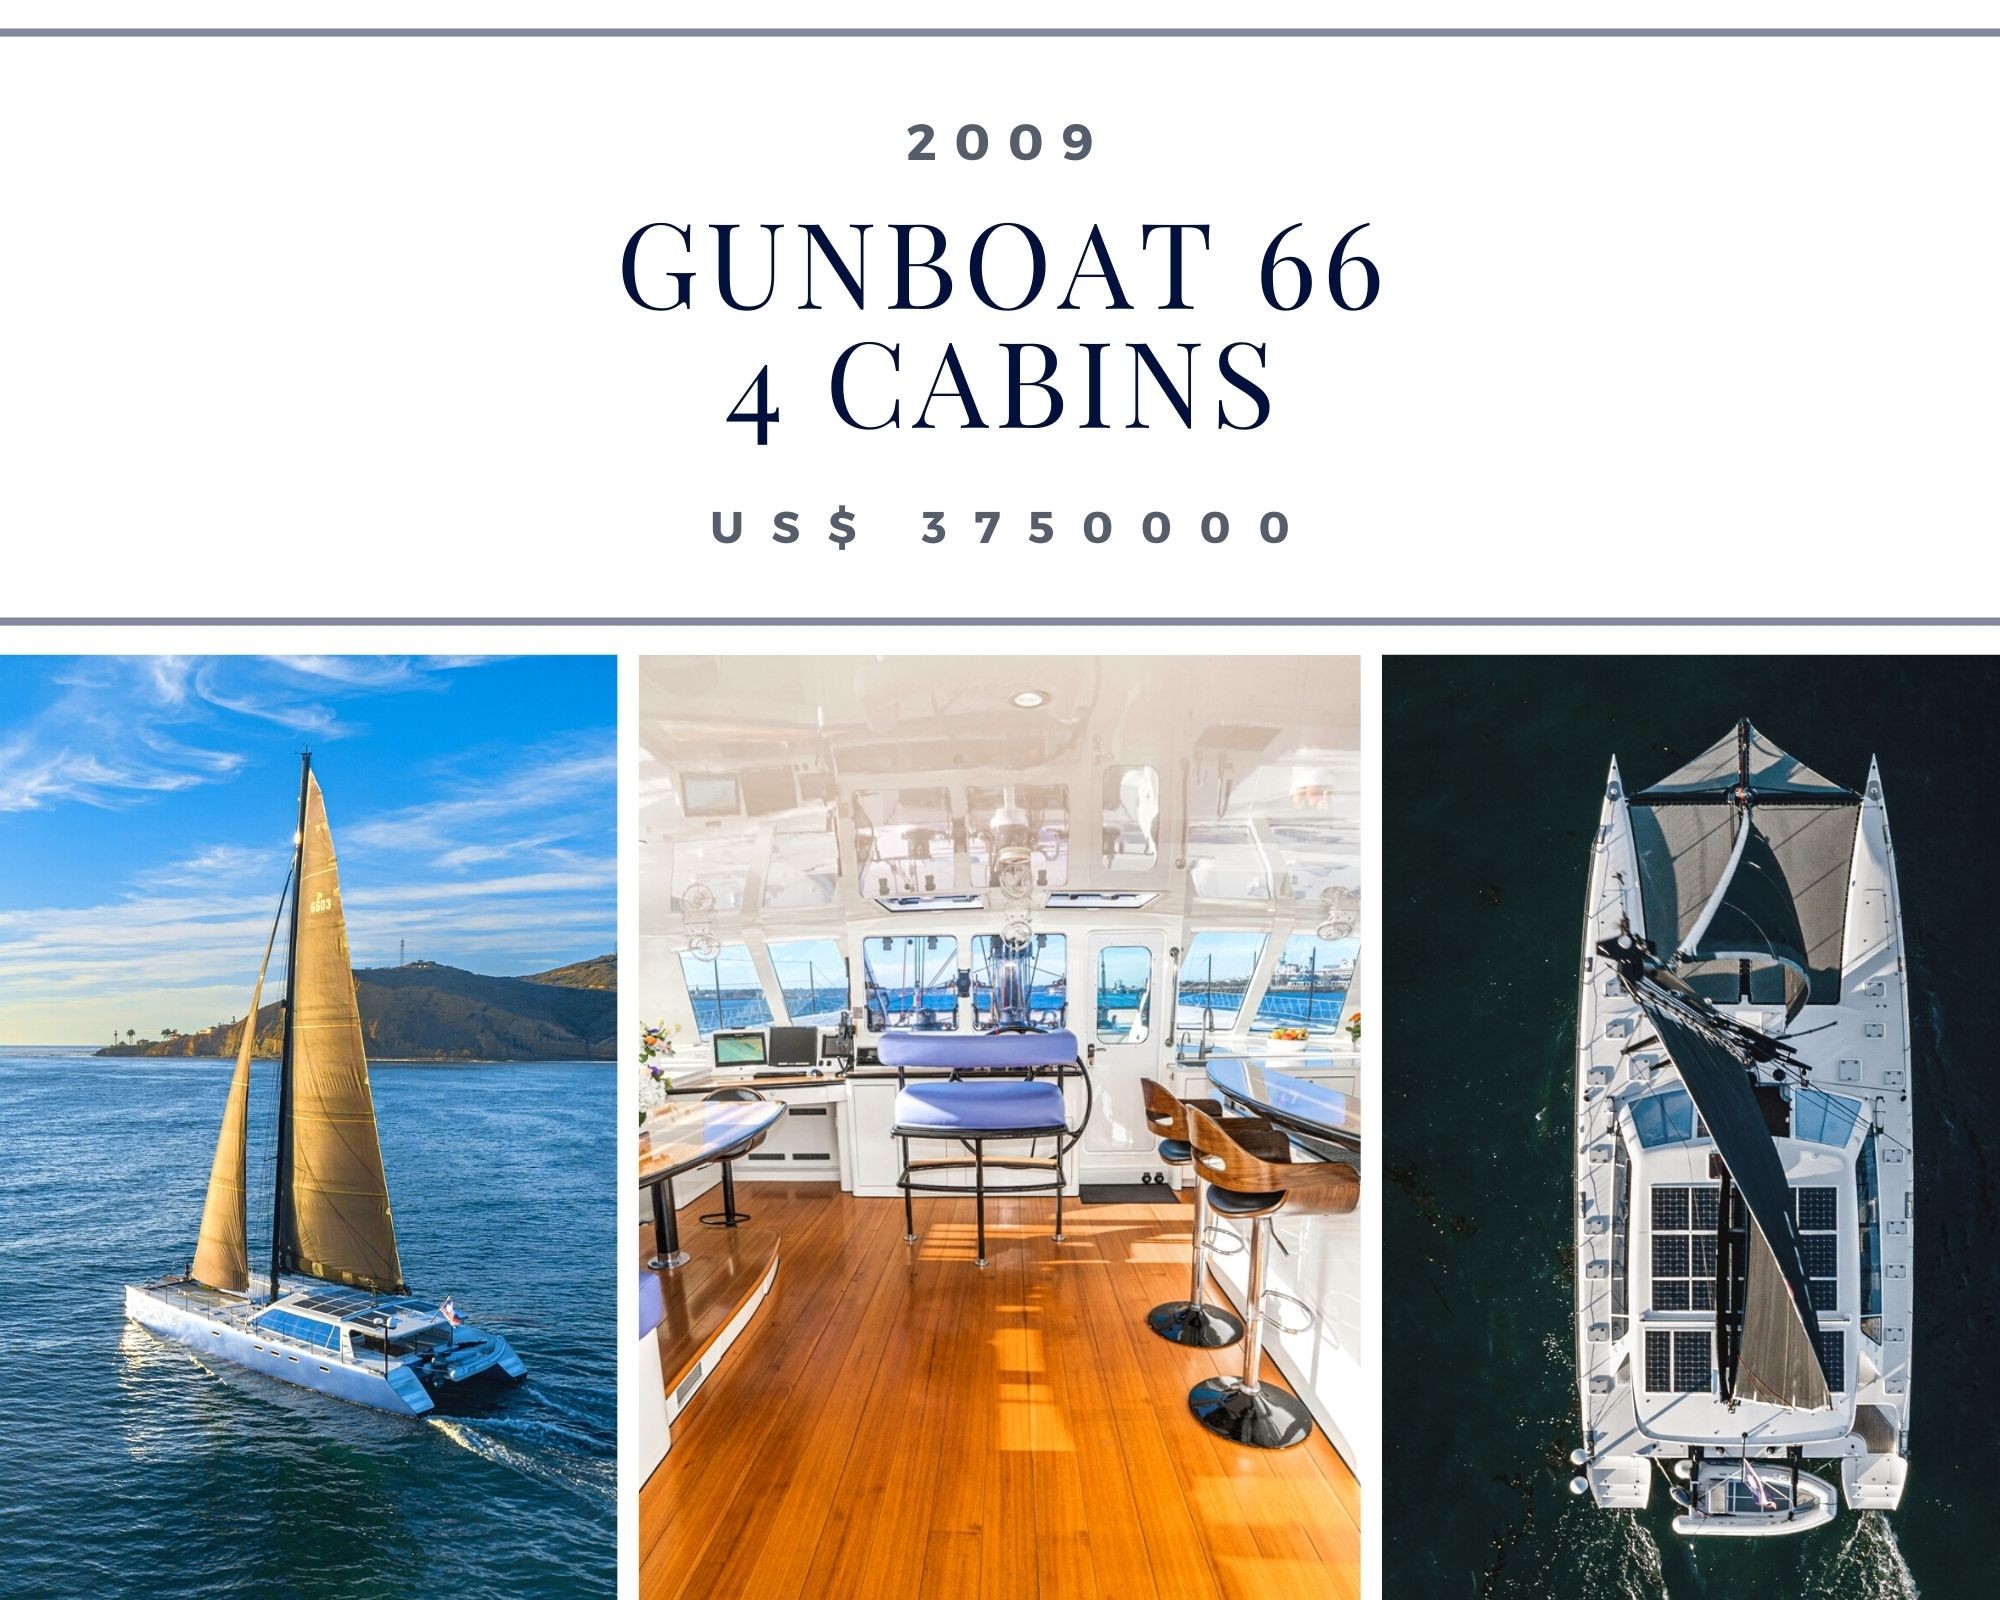 For sale gunboat 66